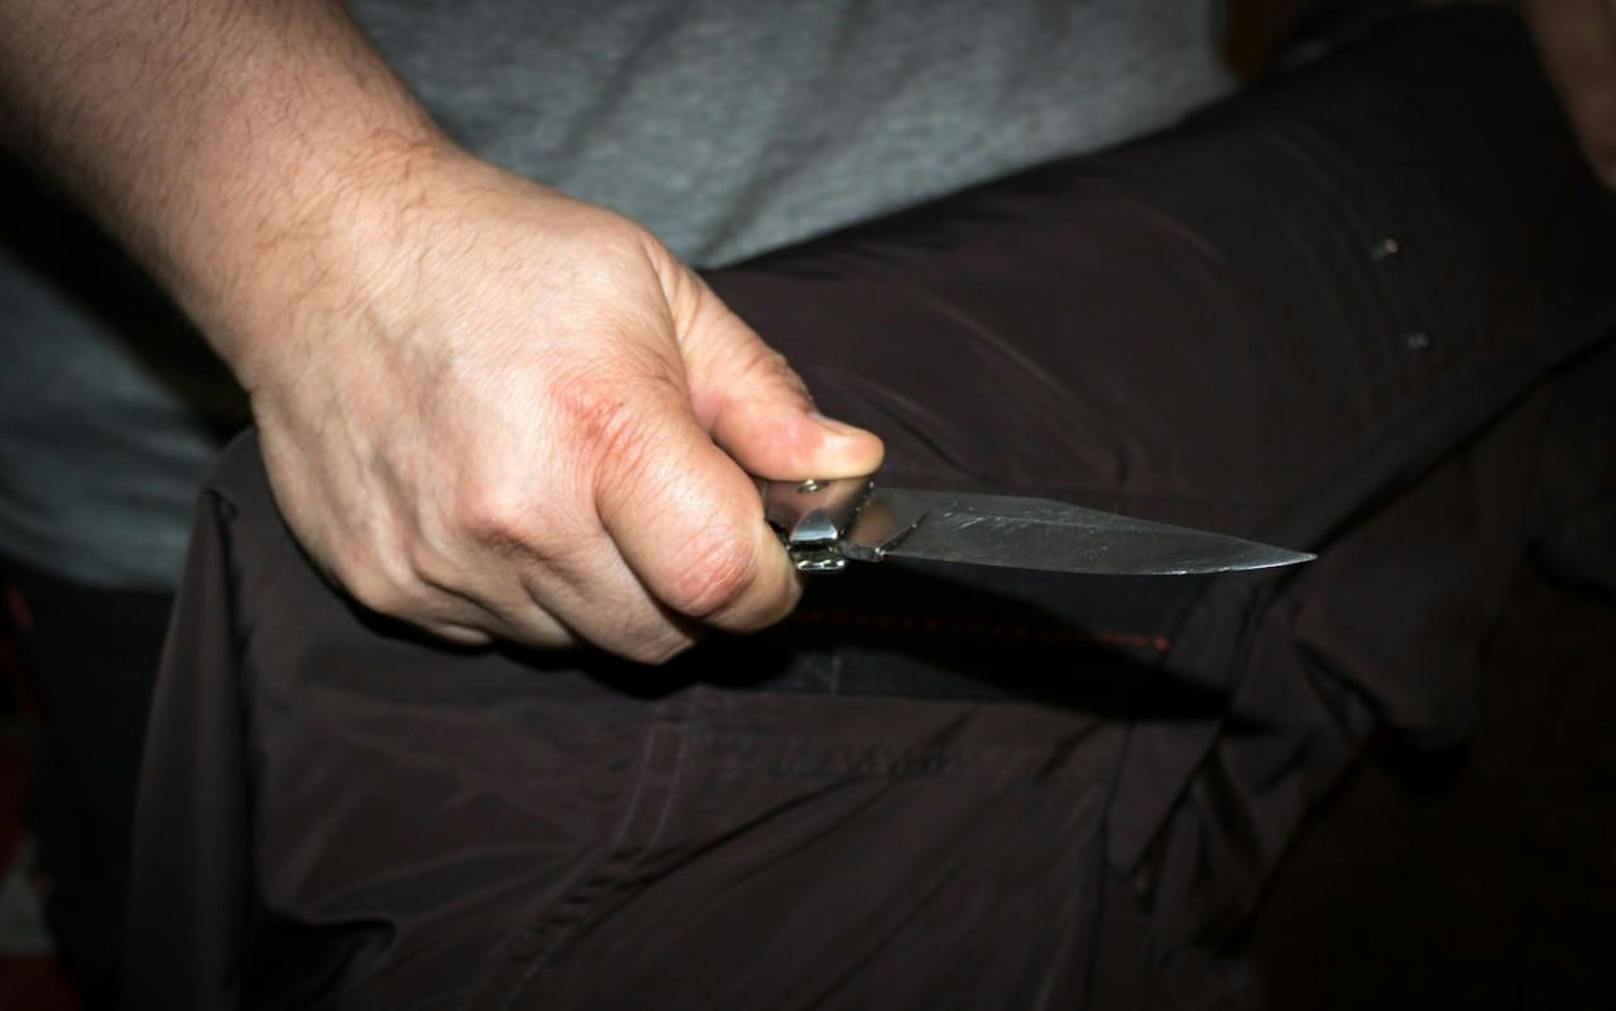 Der Zwölfjährige wurde laut Polizei mit einem Messer bedroht, musste sein Handy und seine Smart Watch abgeben.